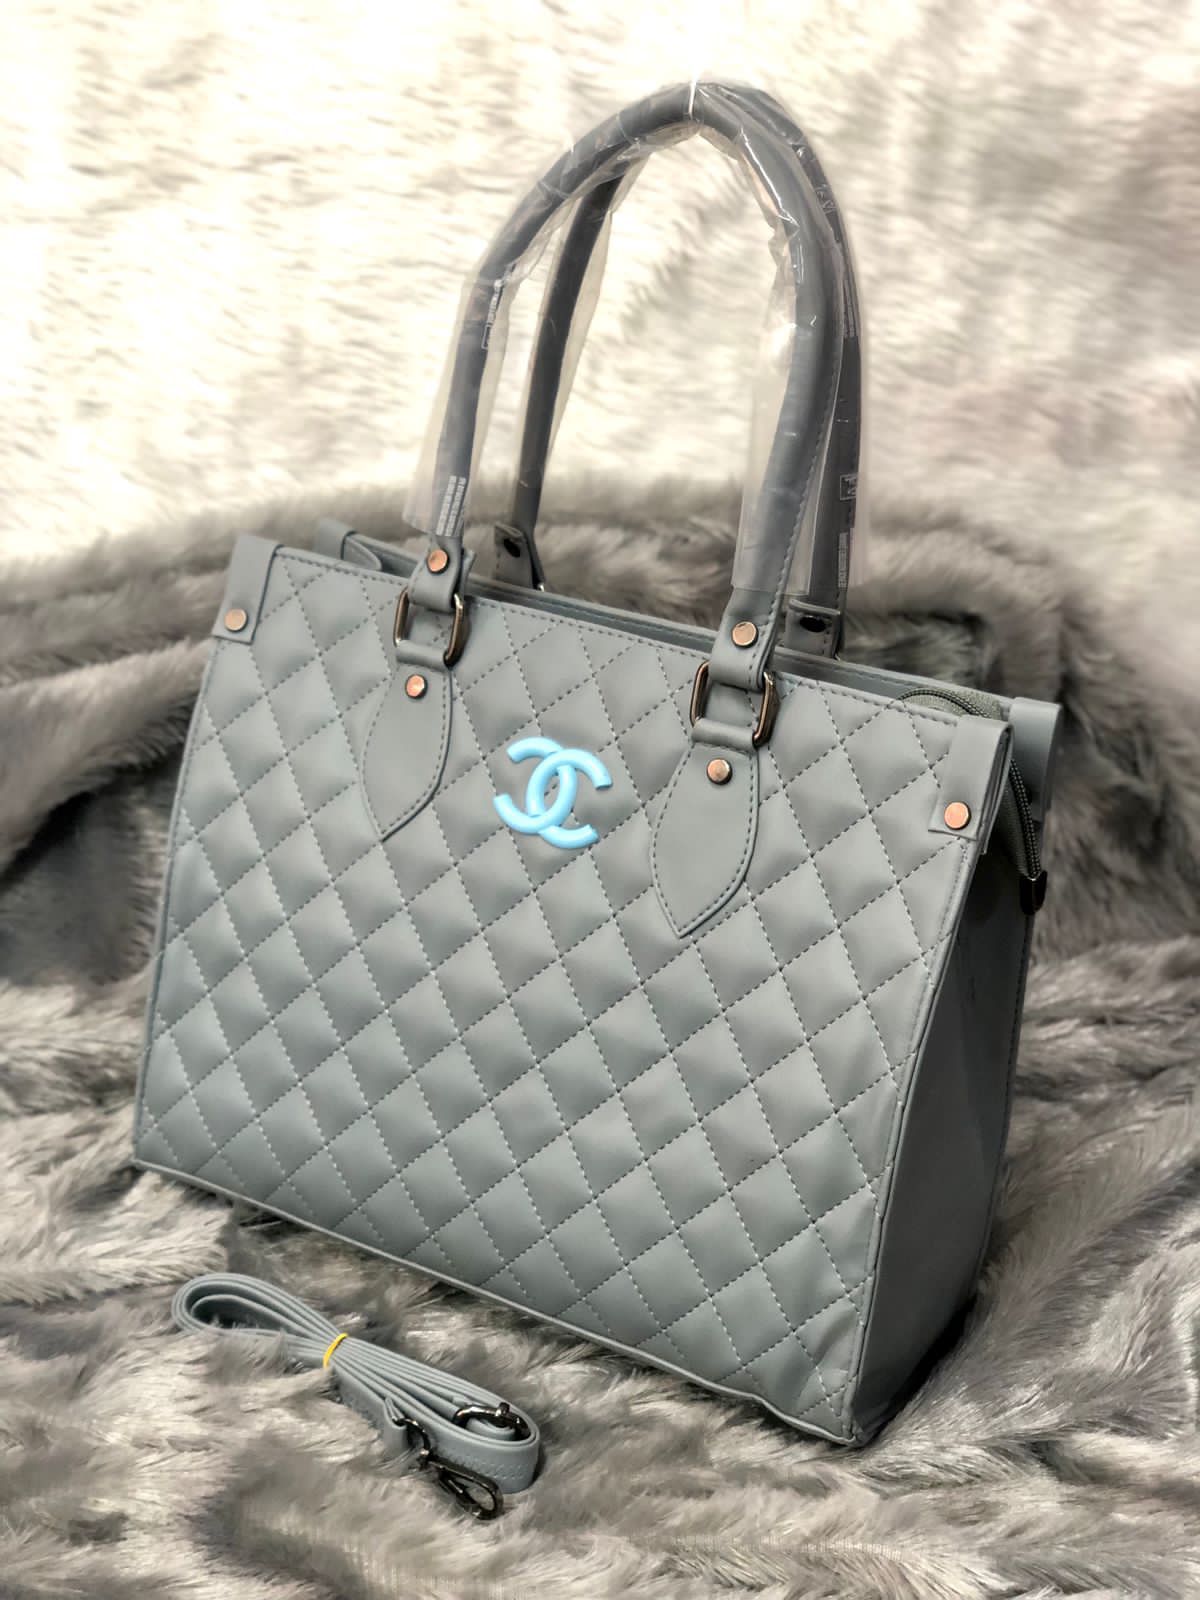 Chanel Tote Handbag For Women - Goodsdream